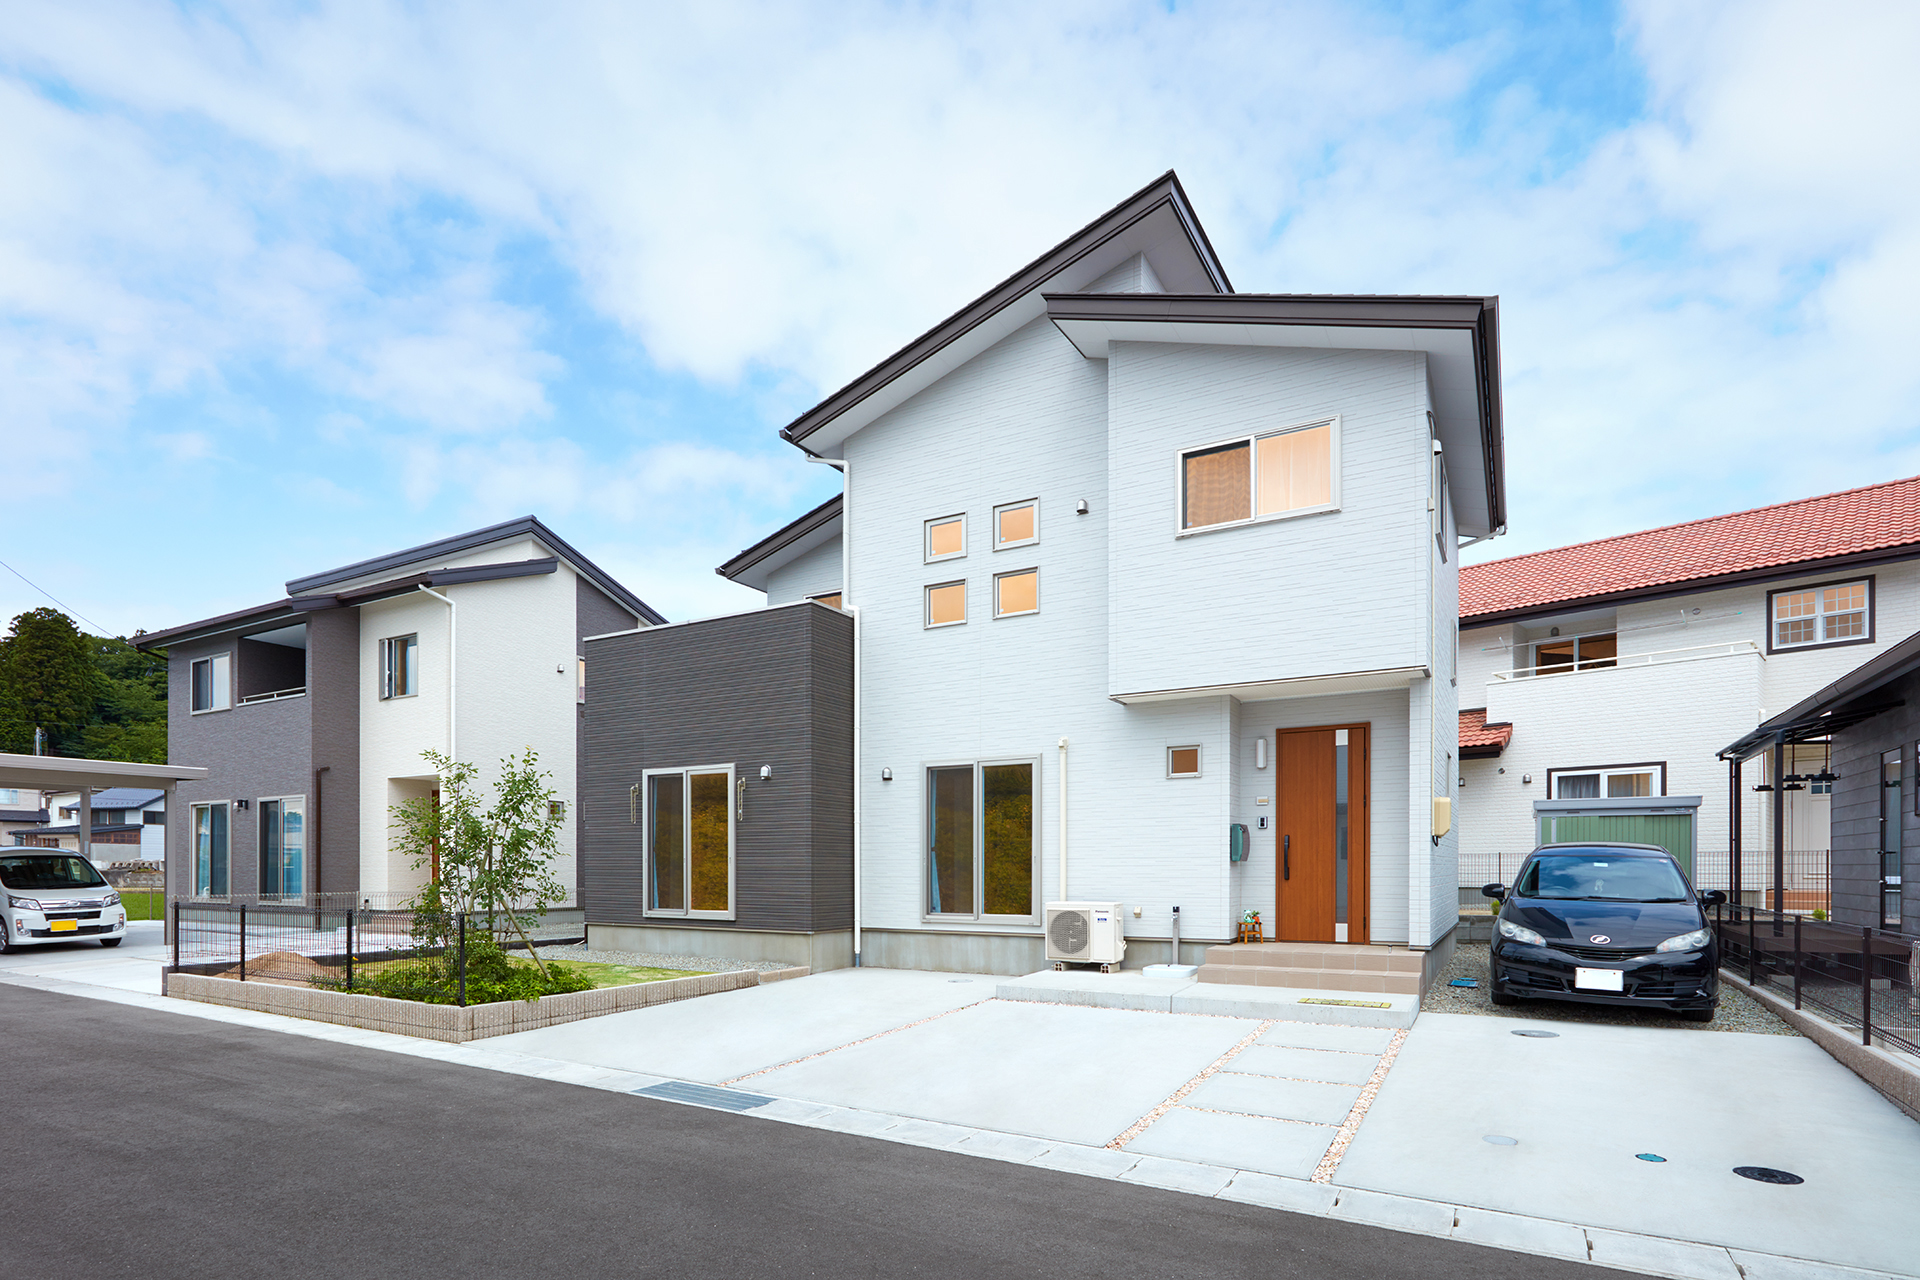 U様 5人家族 夫婦 子ども2人 妻の母 福島県二本松市の新築一戸建て 注文住宅の建築ならマルヨシ工業